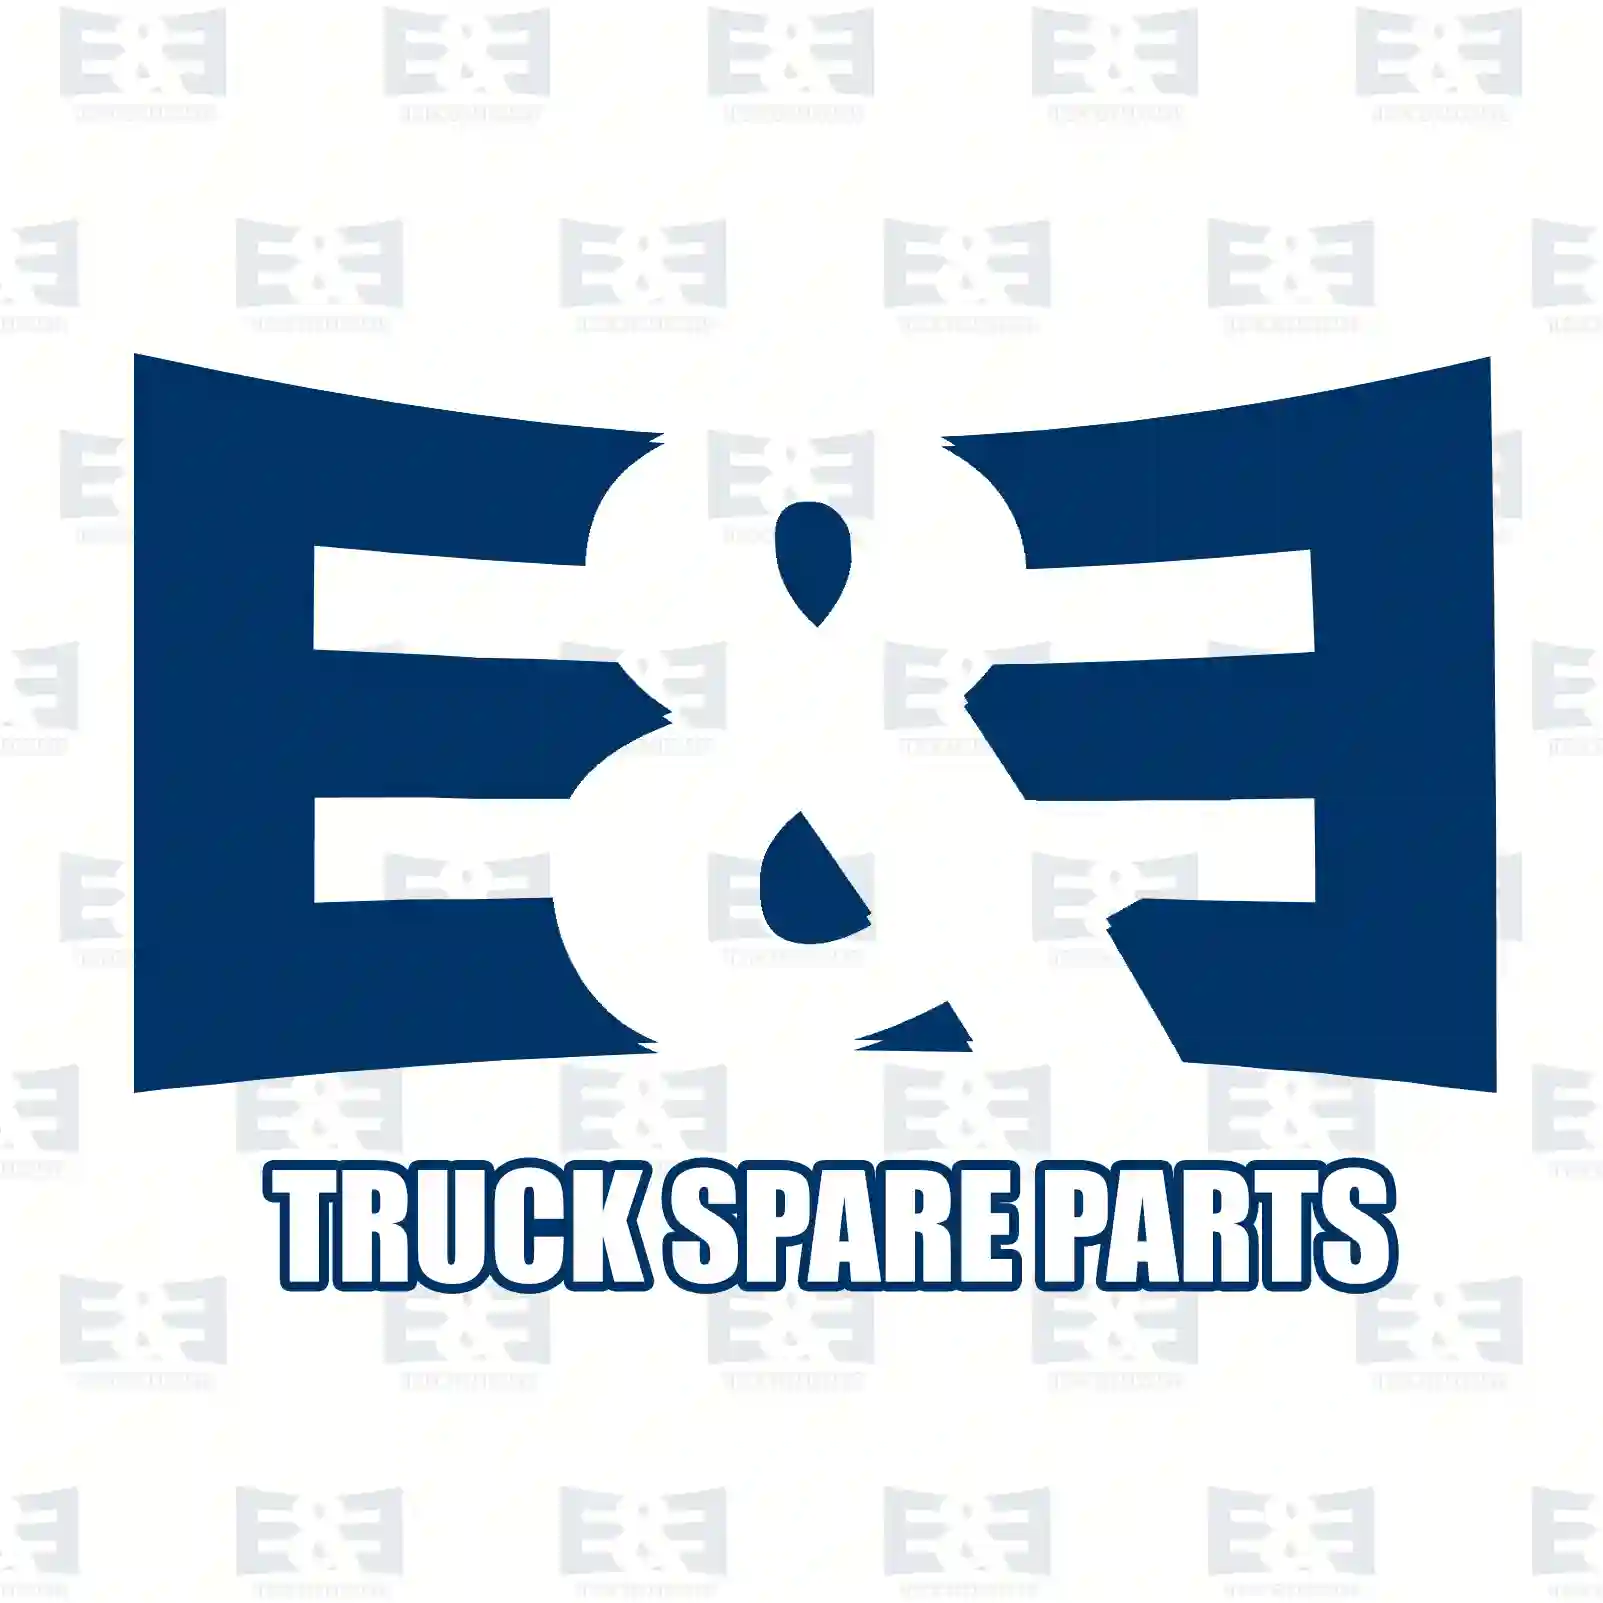 Clutch disc, 2E2289175, 81303010455, 813 ||  2E2289175 E&E Truck Spare Parts | Truck Spare Parts, Auotomotive Spare Parts Clutch disc, 2E2289175, 81303010455, 813 ||  2E2289175 E&E Truck Spare Parts | Truck Spare Parts, Auotomotive Spare Parts